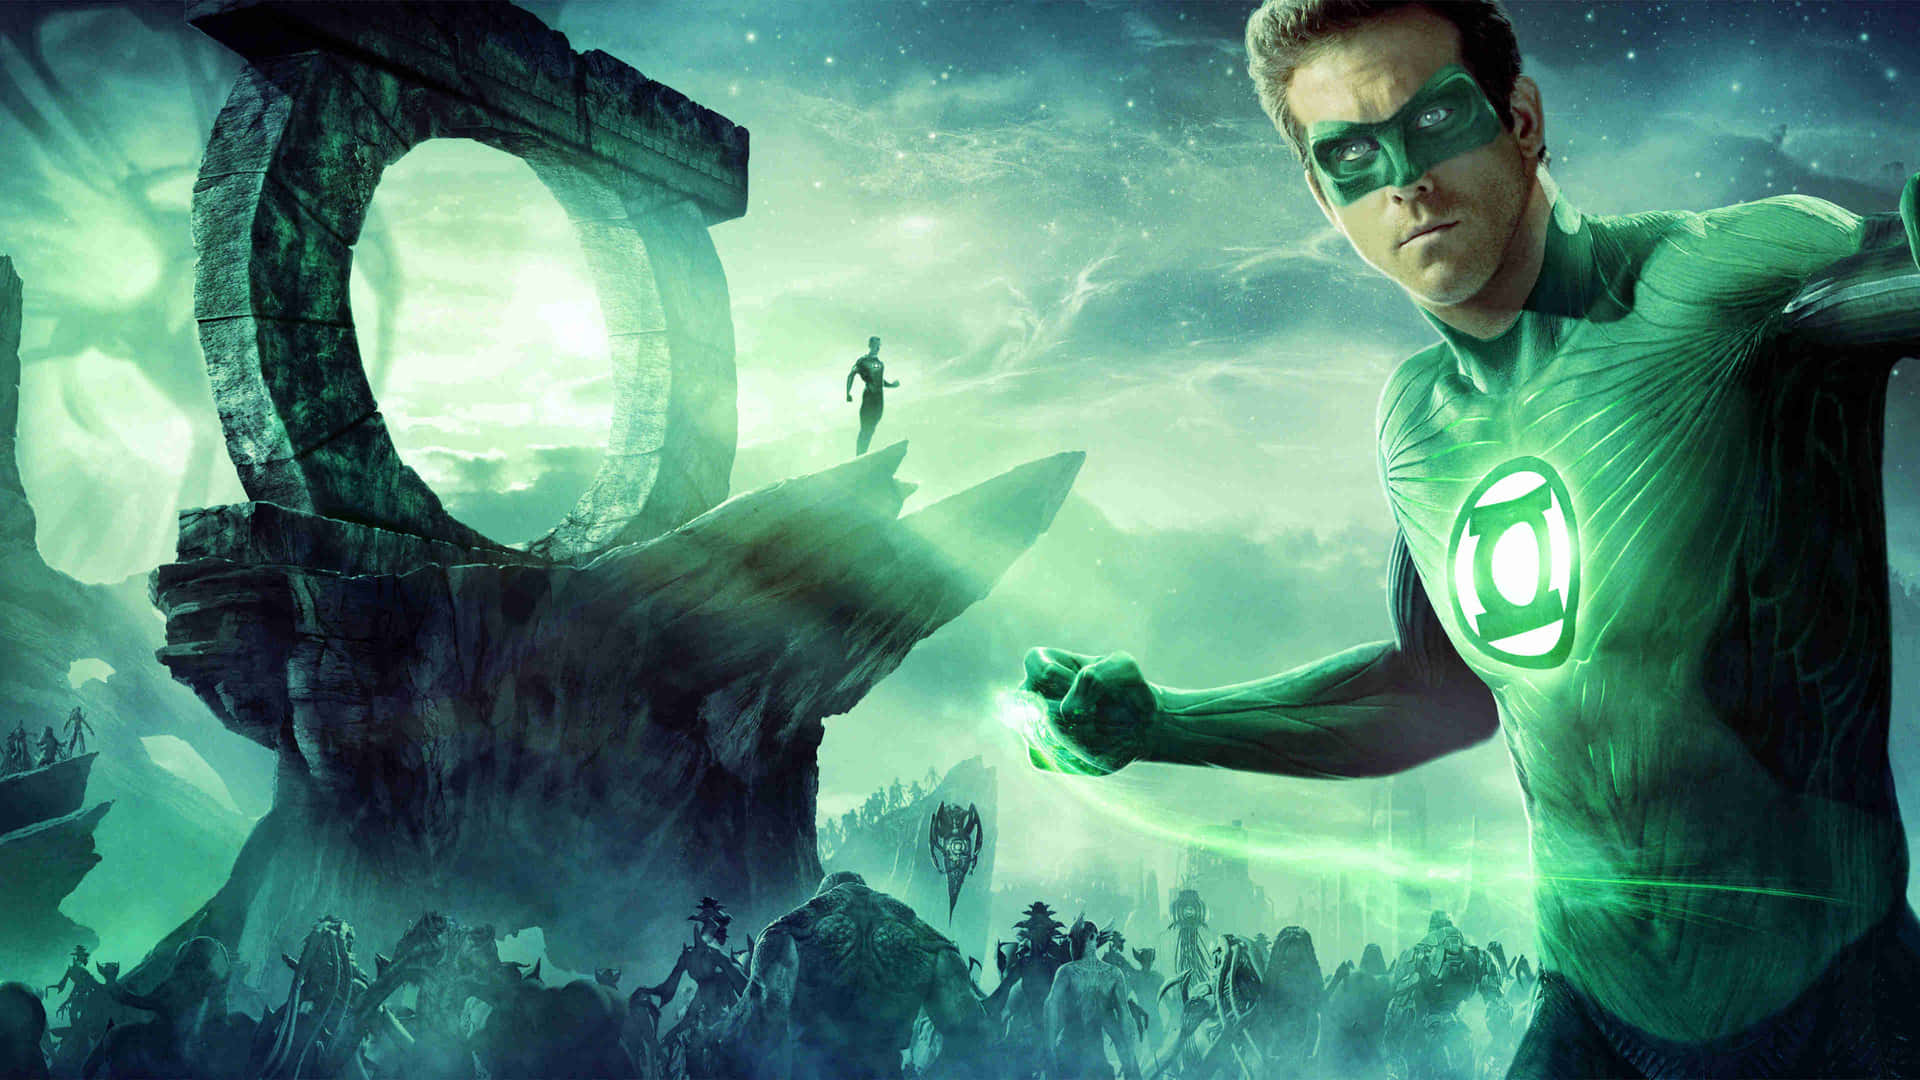 Hintergrundbildmit Green Lantern